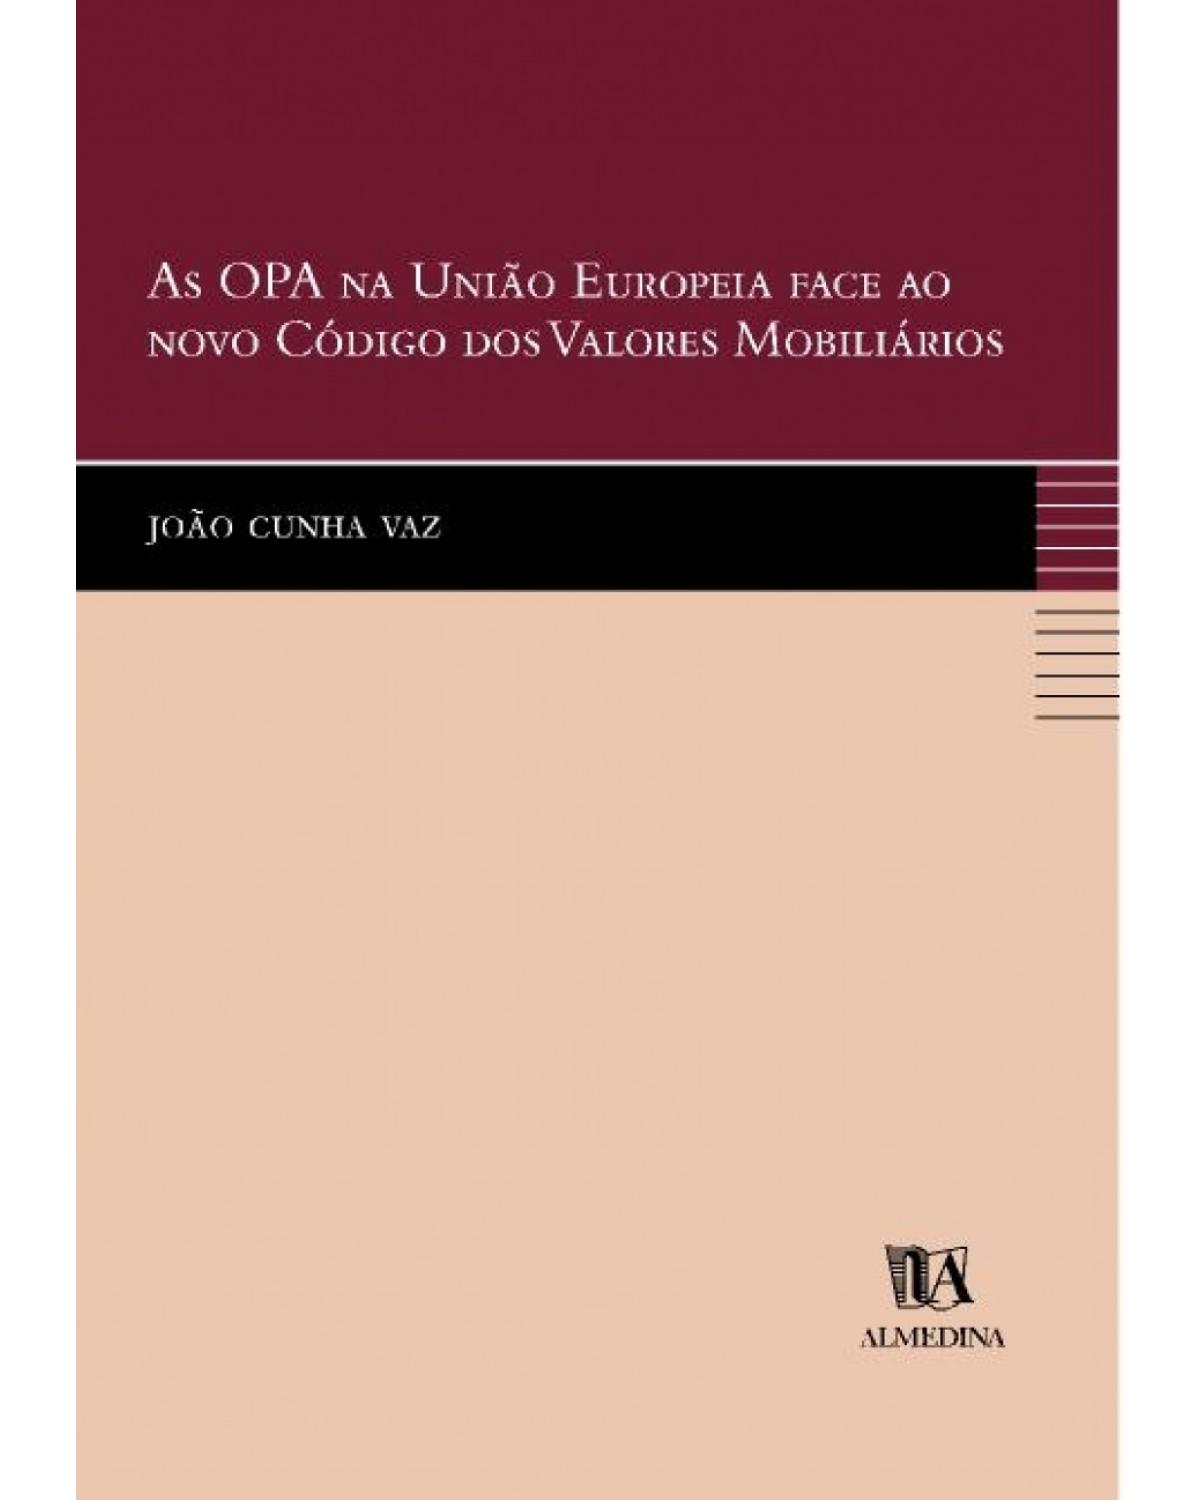 As OPA na União Europeia face ao novo código dos valores mobiliários - 1ª Edição | 2000